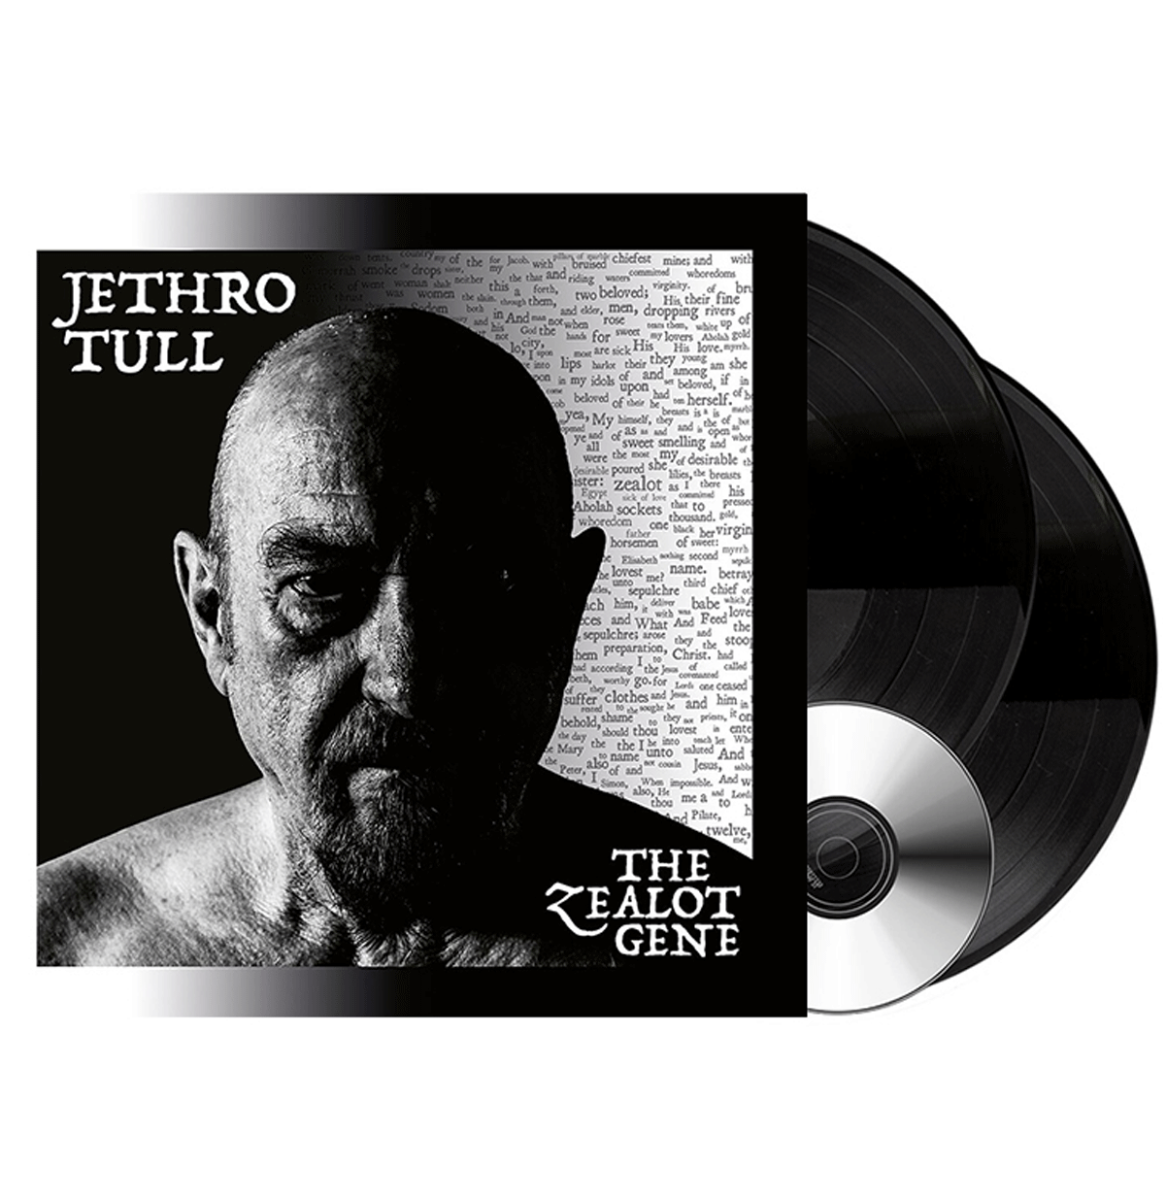 Jethro Tull - The Zealot Gene 2LP + CD